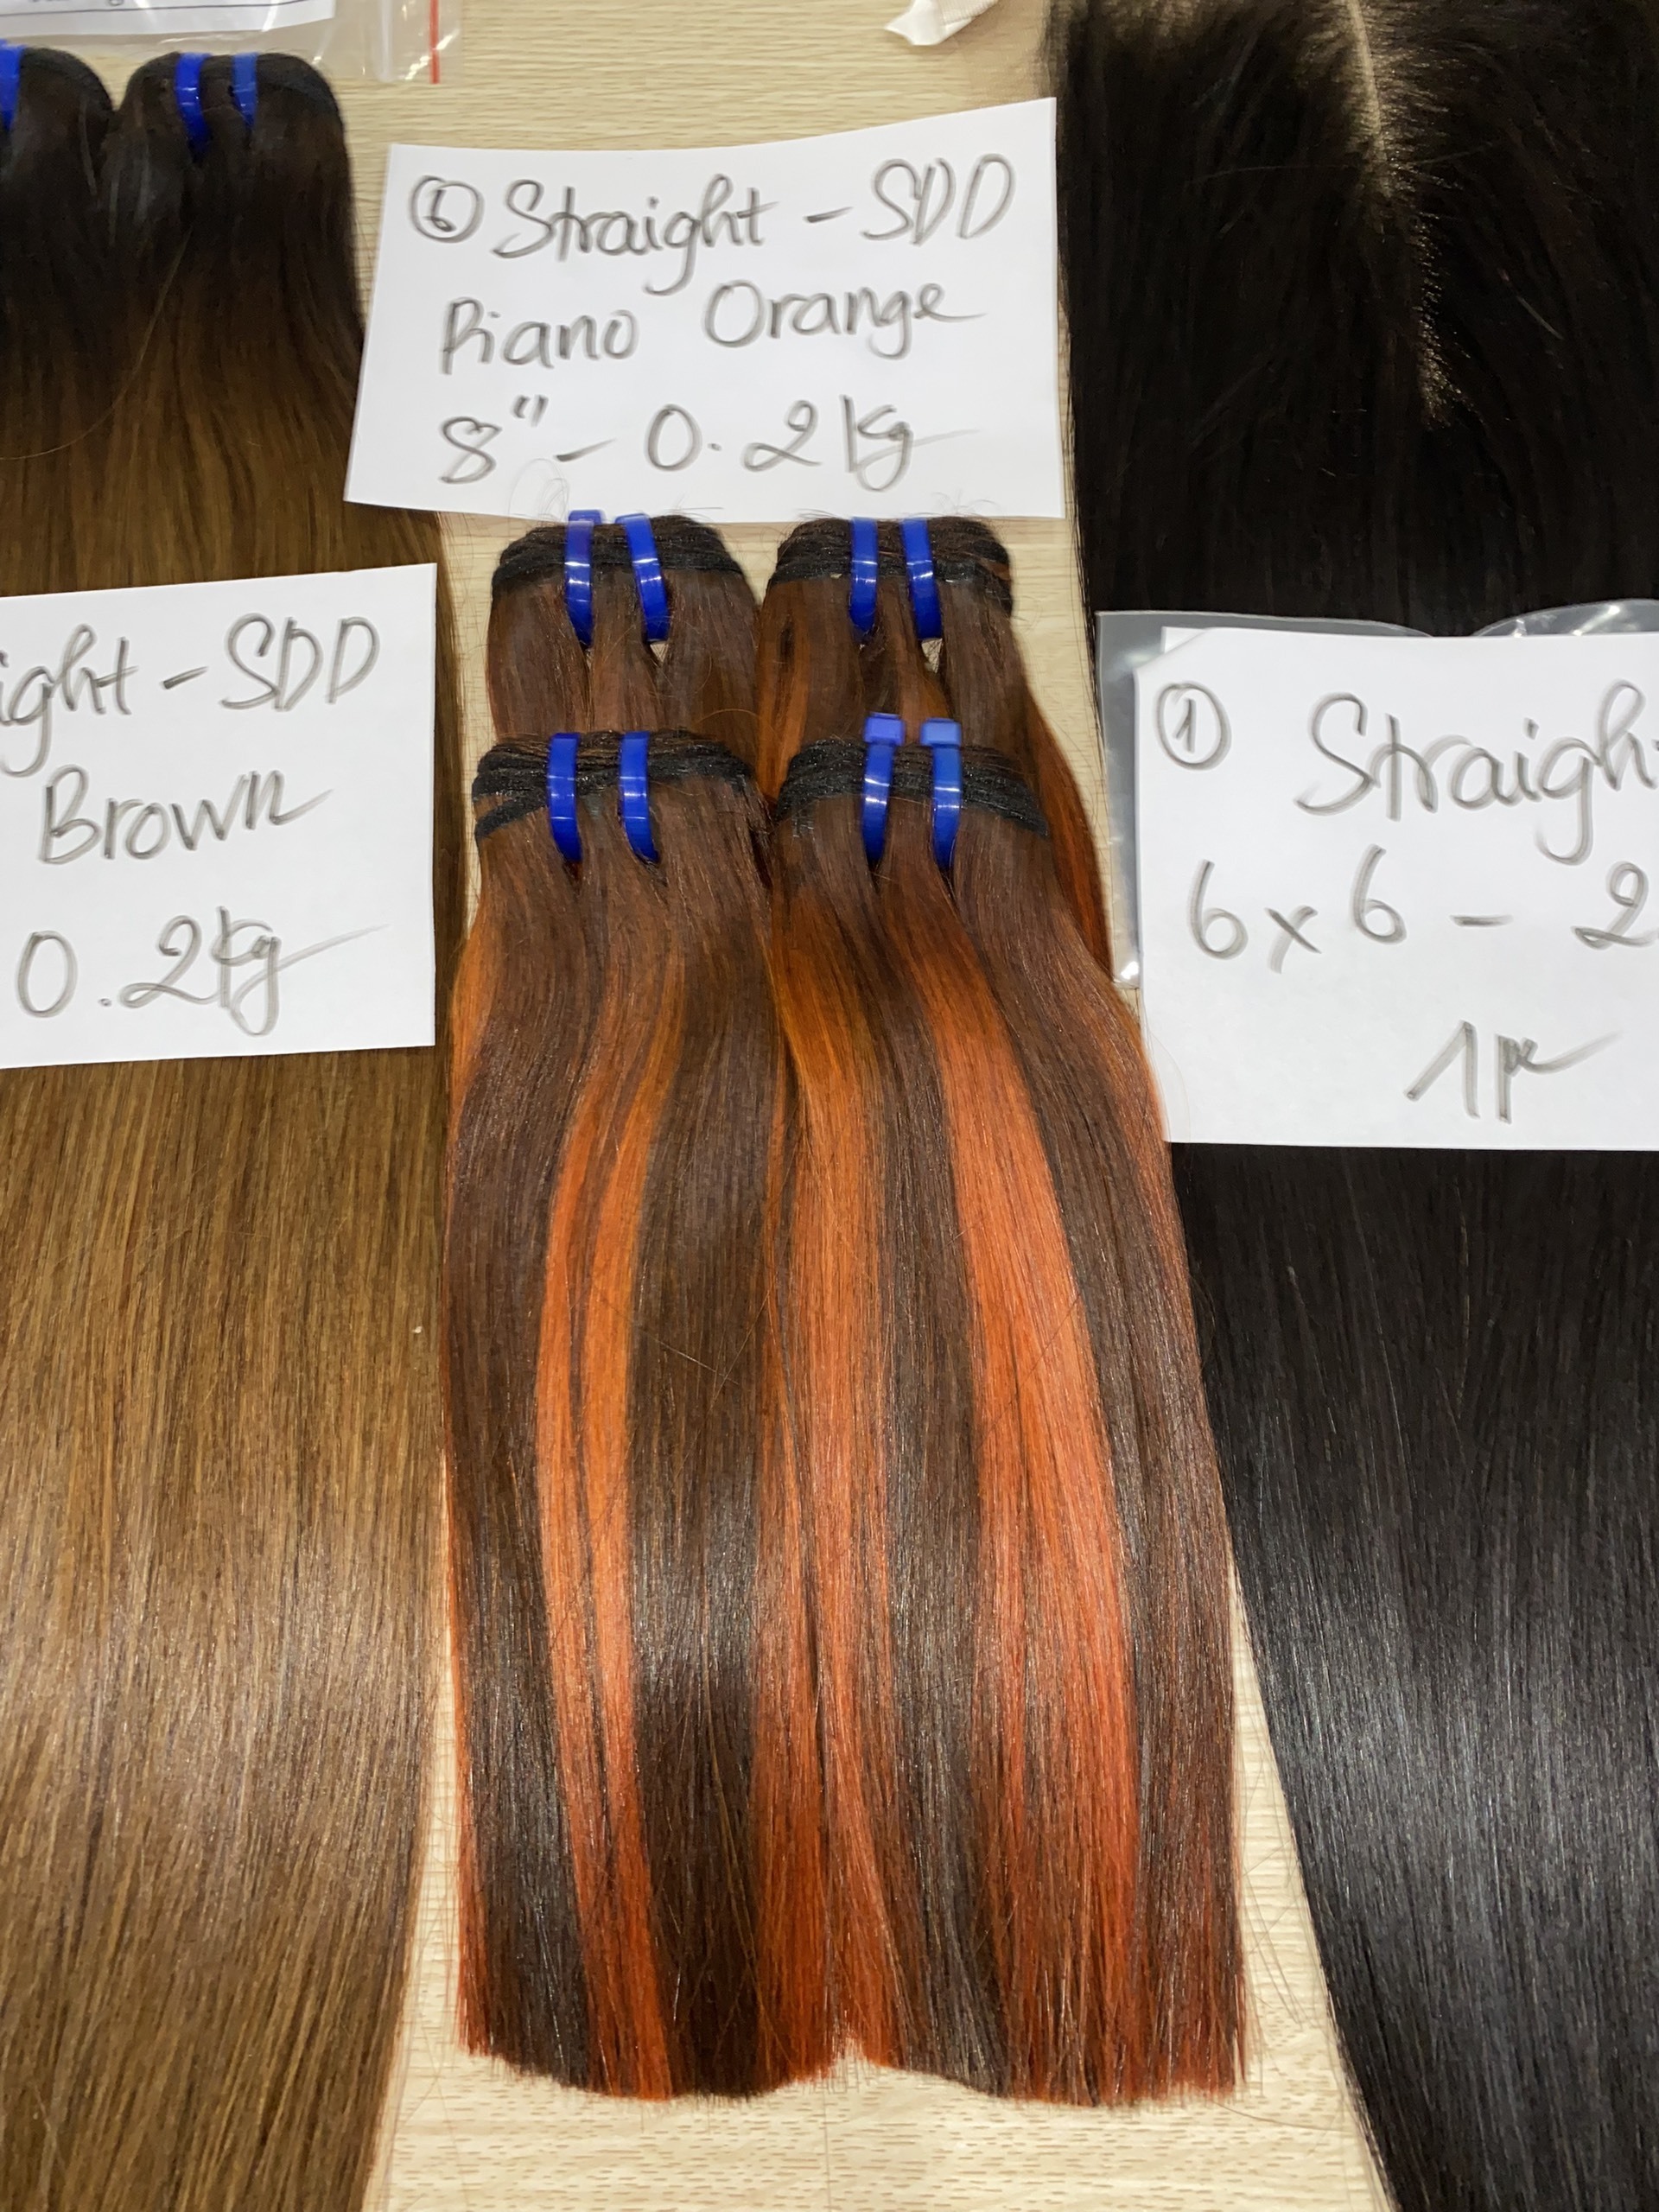 Straight piano orange hair weave